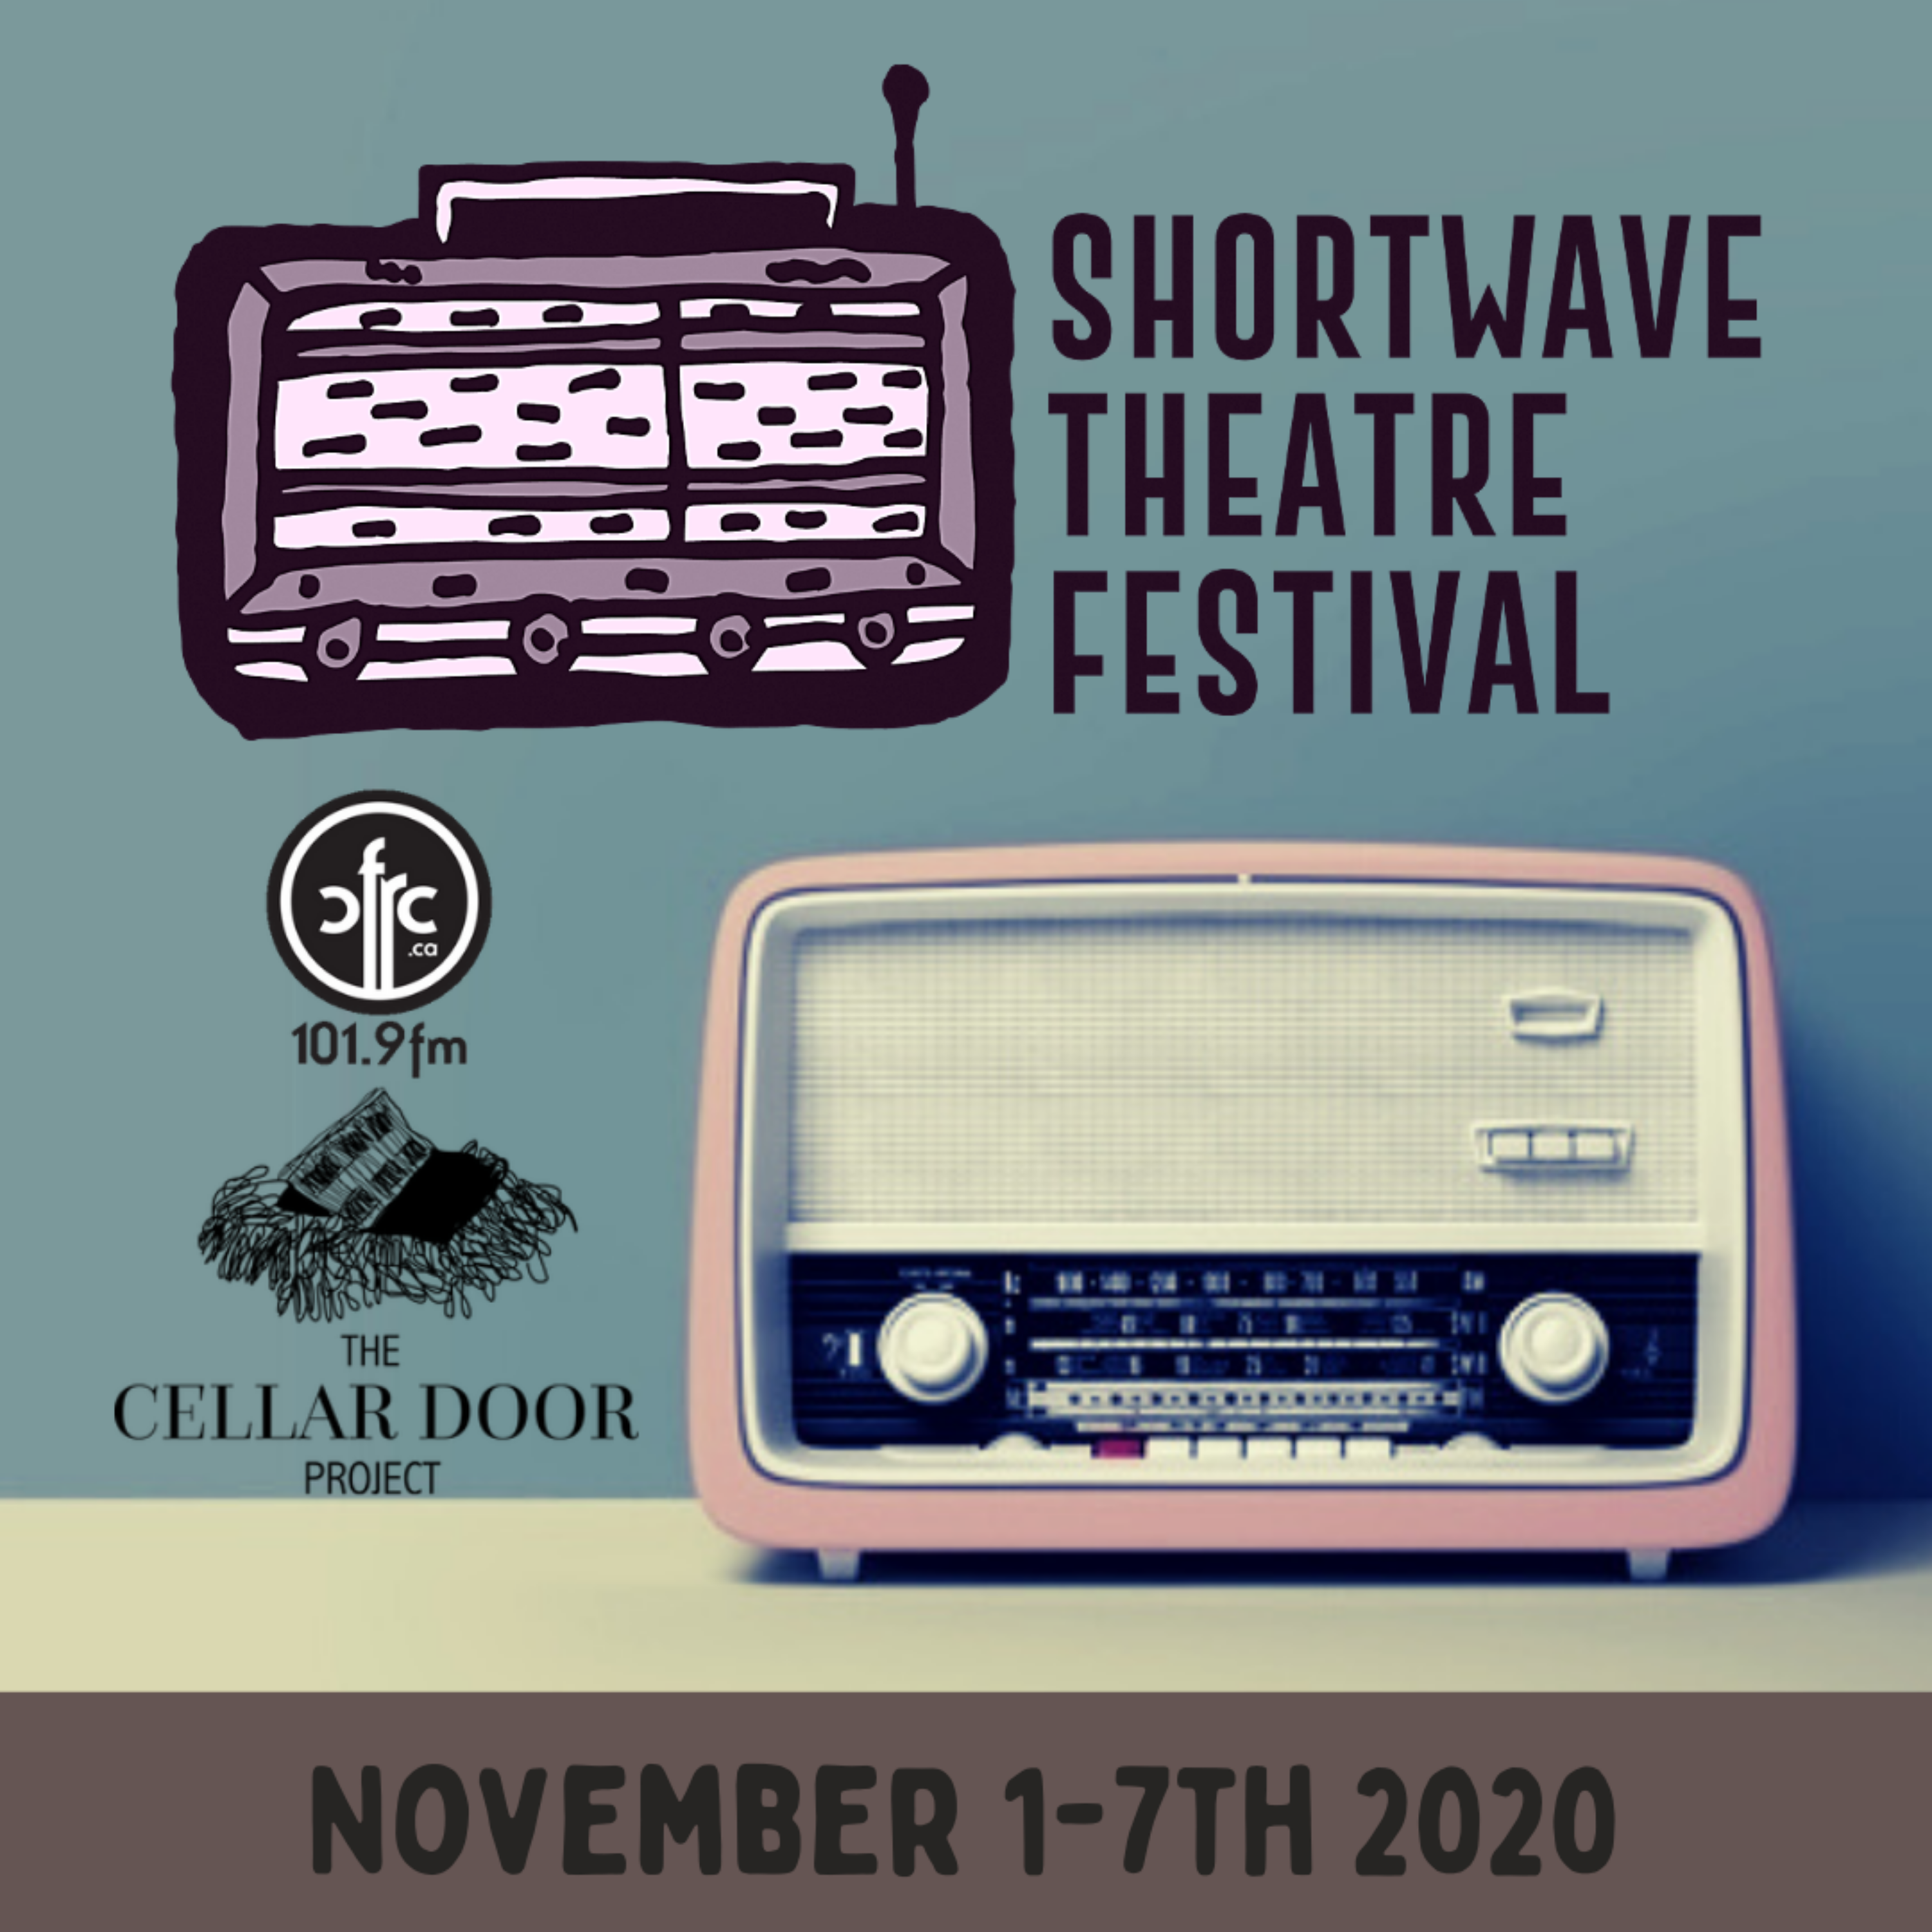 Shortwave Theatre Festival